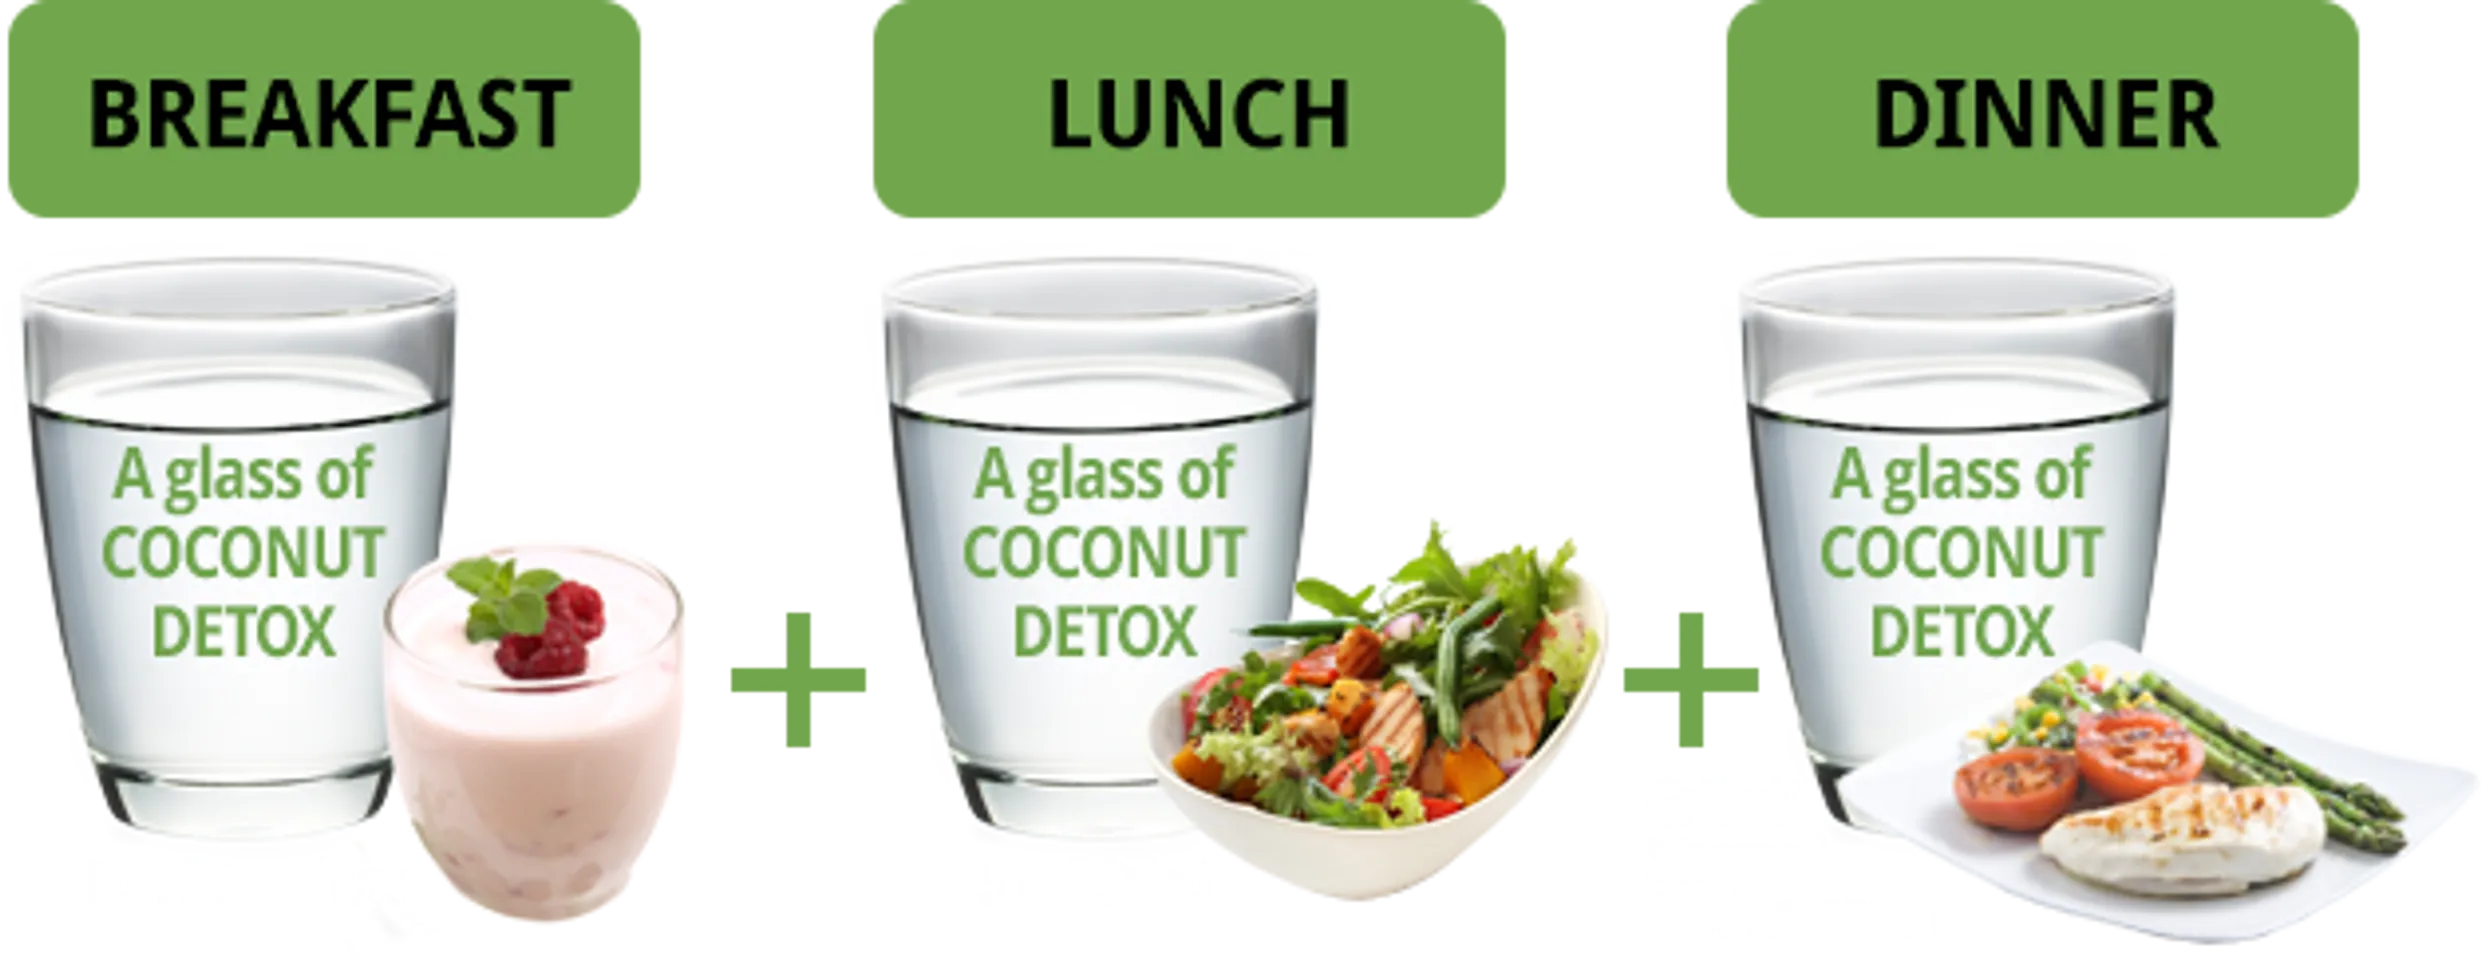 Chế độ ăn khi sử dụng Coconut detox